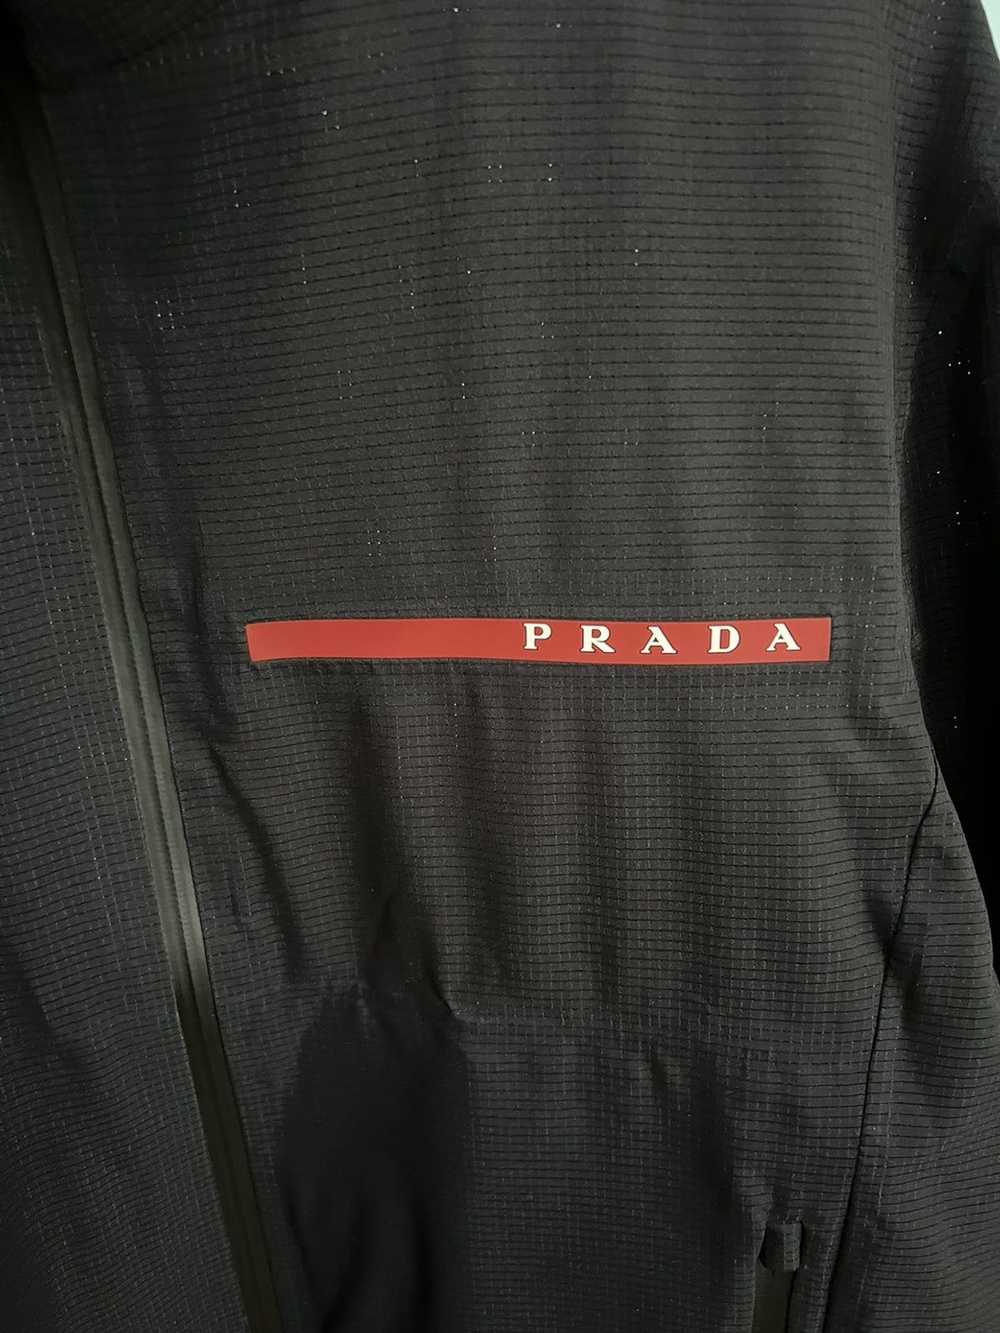 Prada Prada Linea Rossa Light Bi-Stretch Jacket - image 4